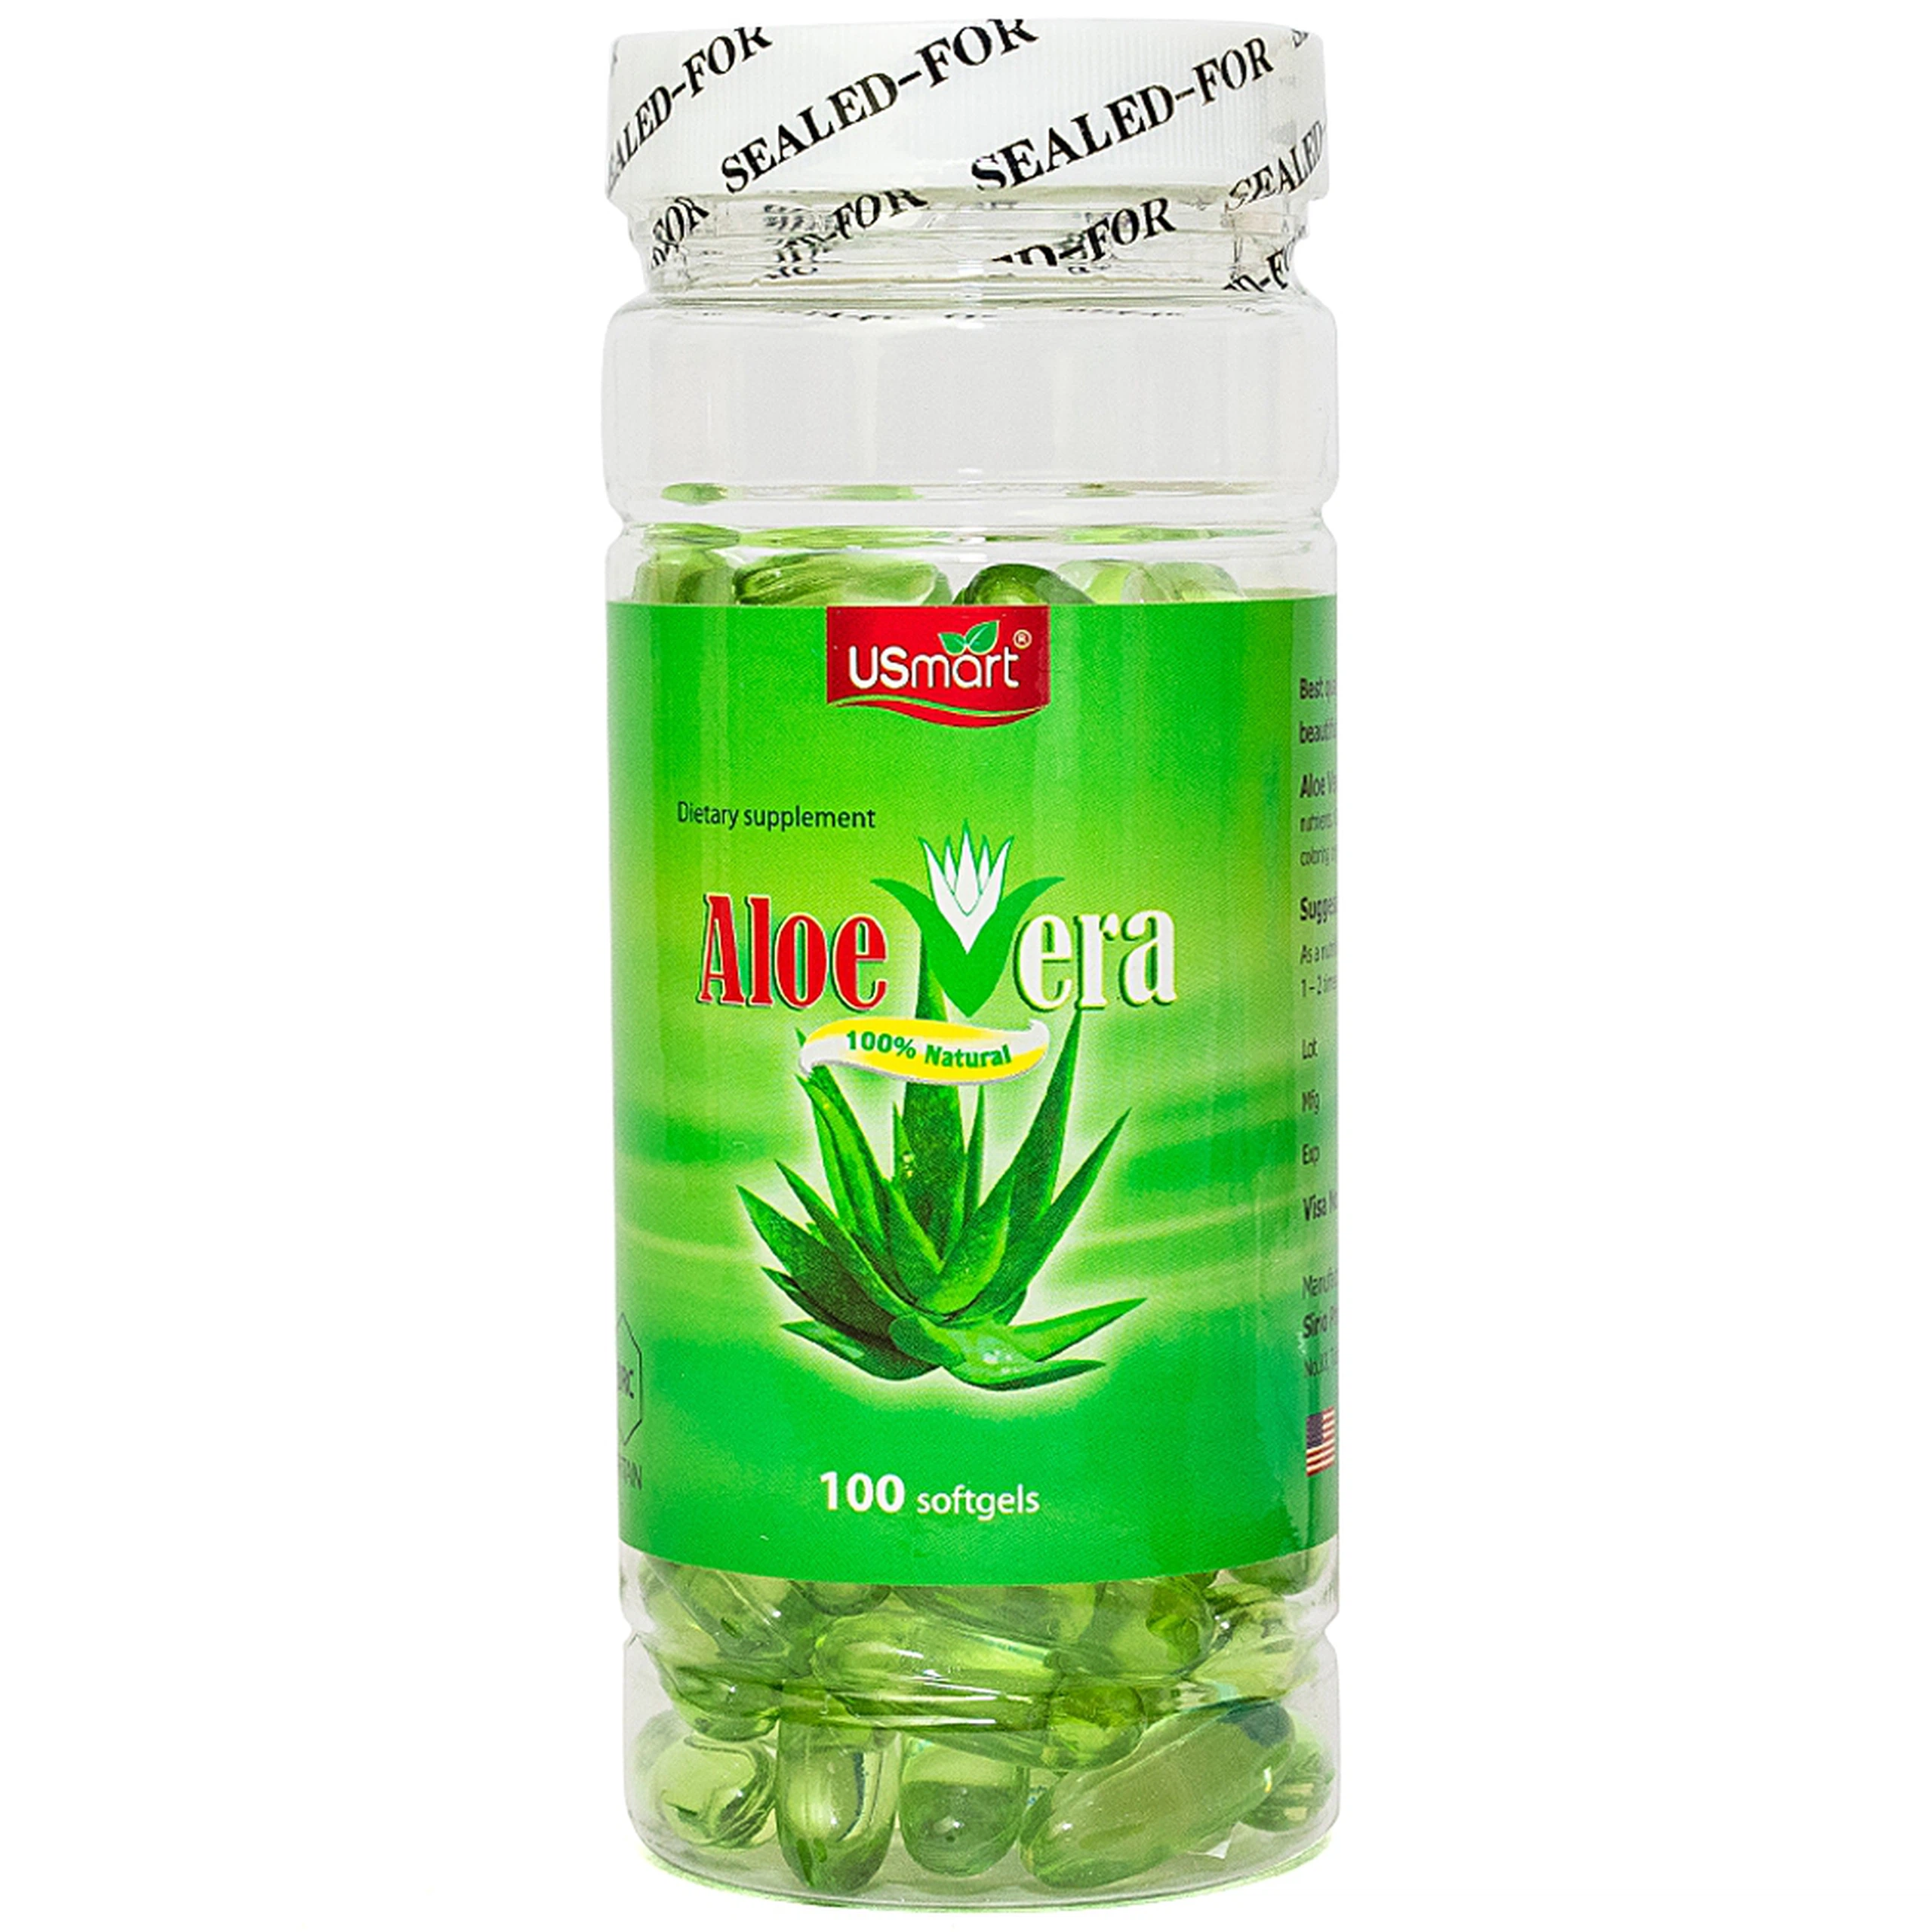 Viên uống Aloe Vera giúp chống oxy hoá, hạn chế lão hóa (100 viên)